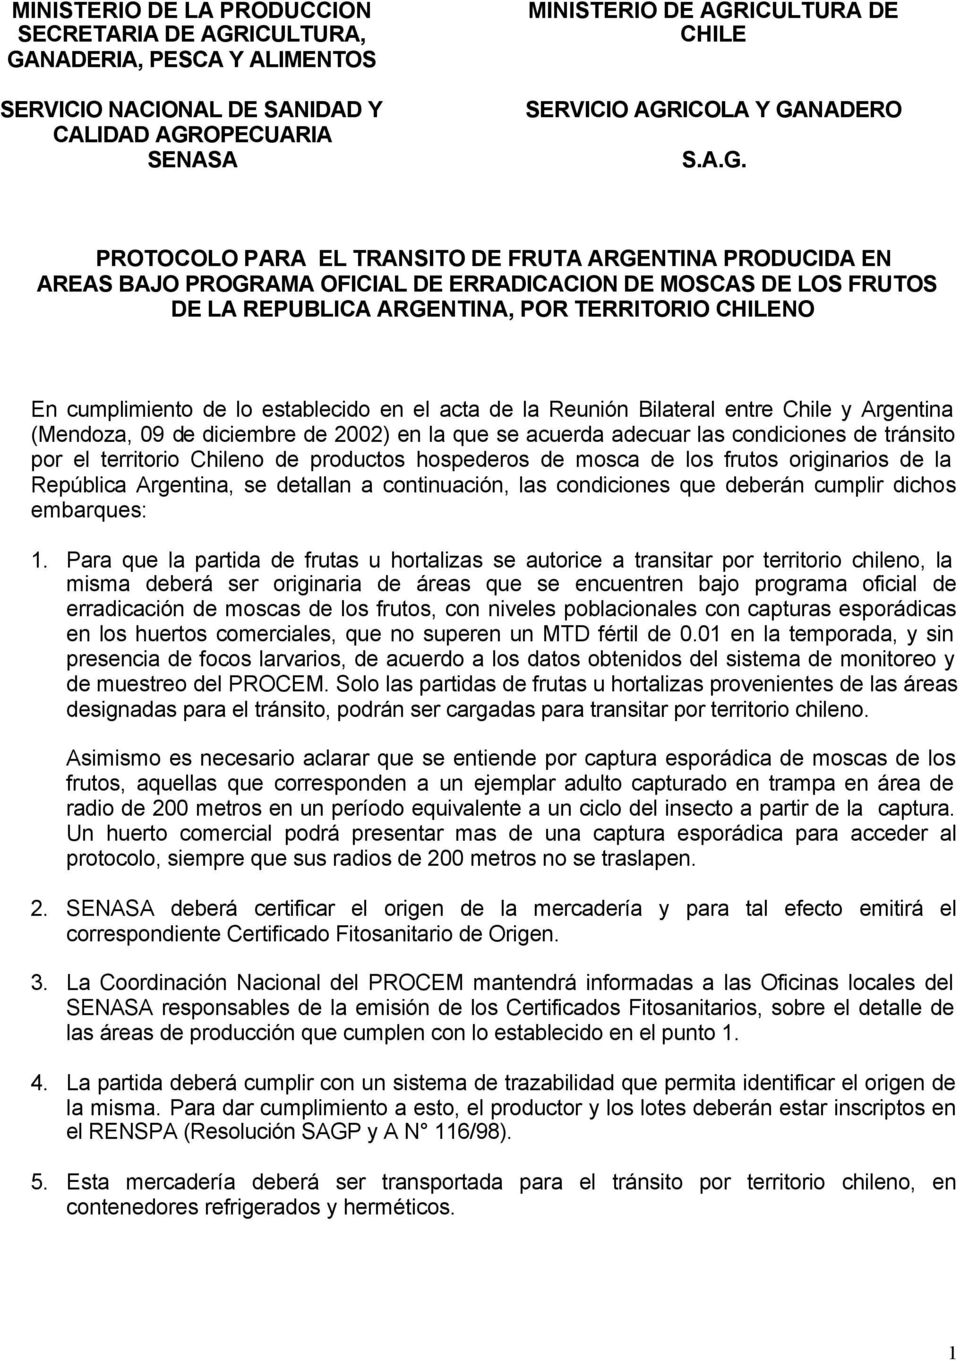 cumplimiento de lo establecido en el acta de la Reunión Bilateral entre Chile y Argentina (Mendoza, 09 de diciembre de 2002) en la que se acuerda adecuar las condiciones de tránsito por el territorio